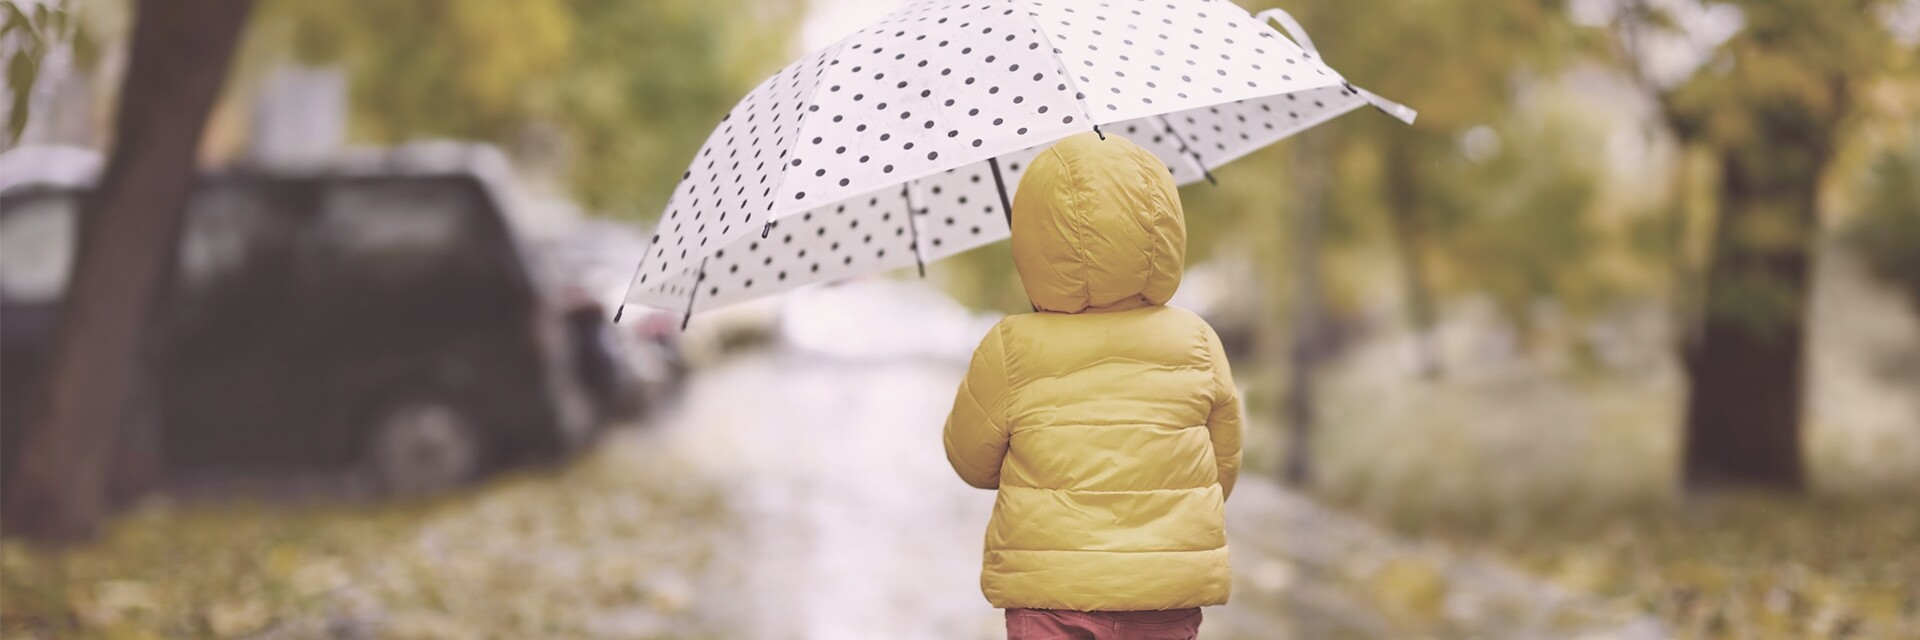 Herbst Kind mit Regenschirm